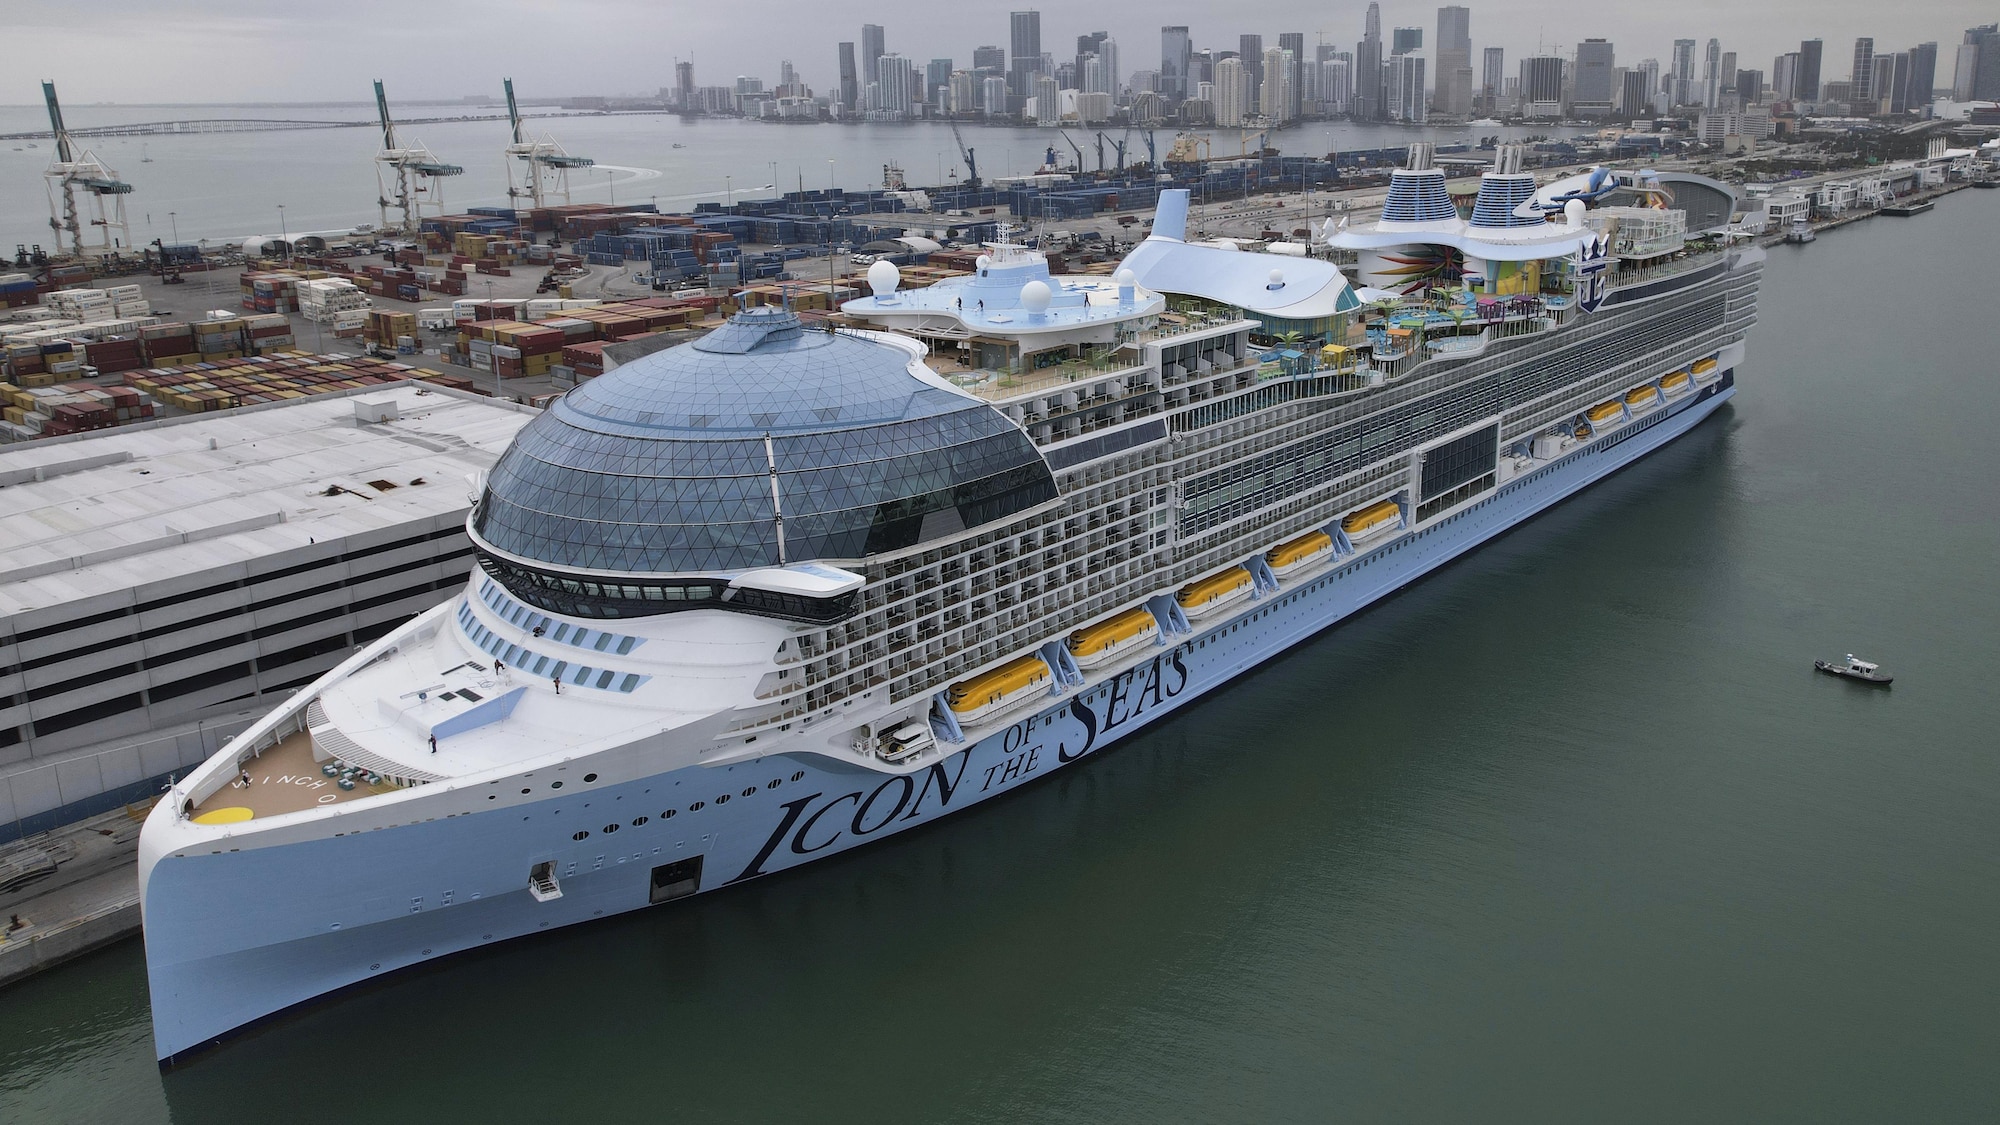 Le Icon of the Seas, le plus grand navire de croisière du monde, accosté au quai du port de Miami.